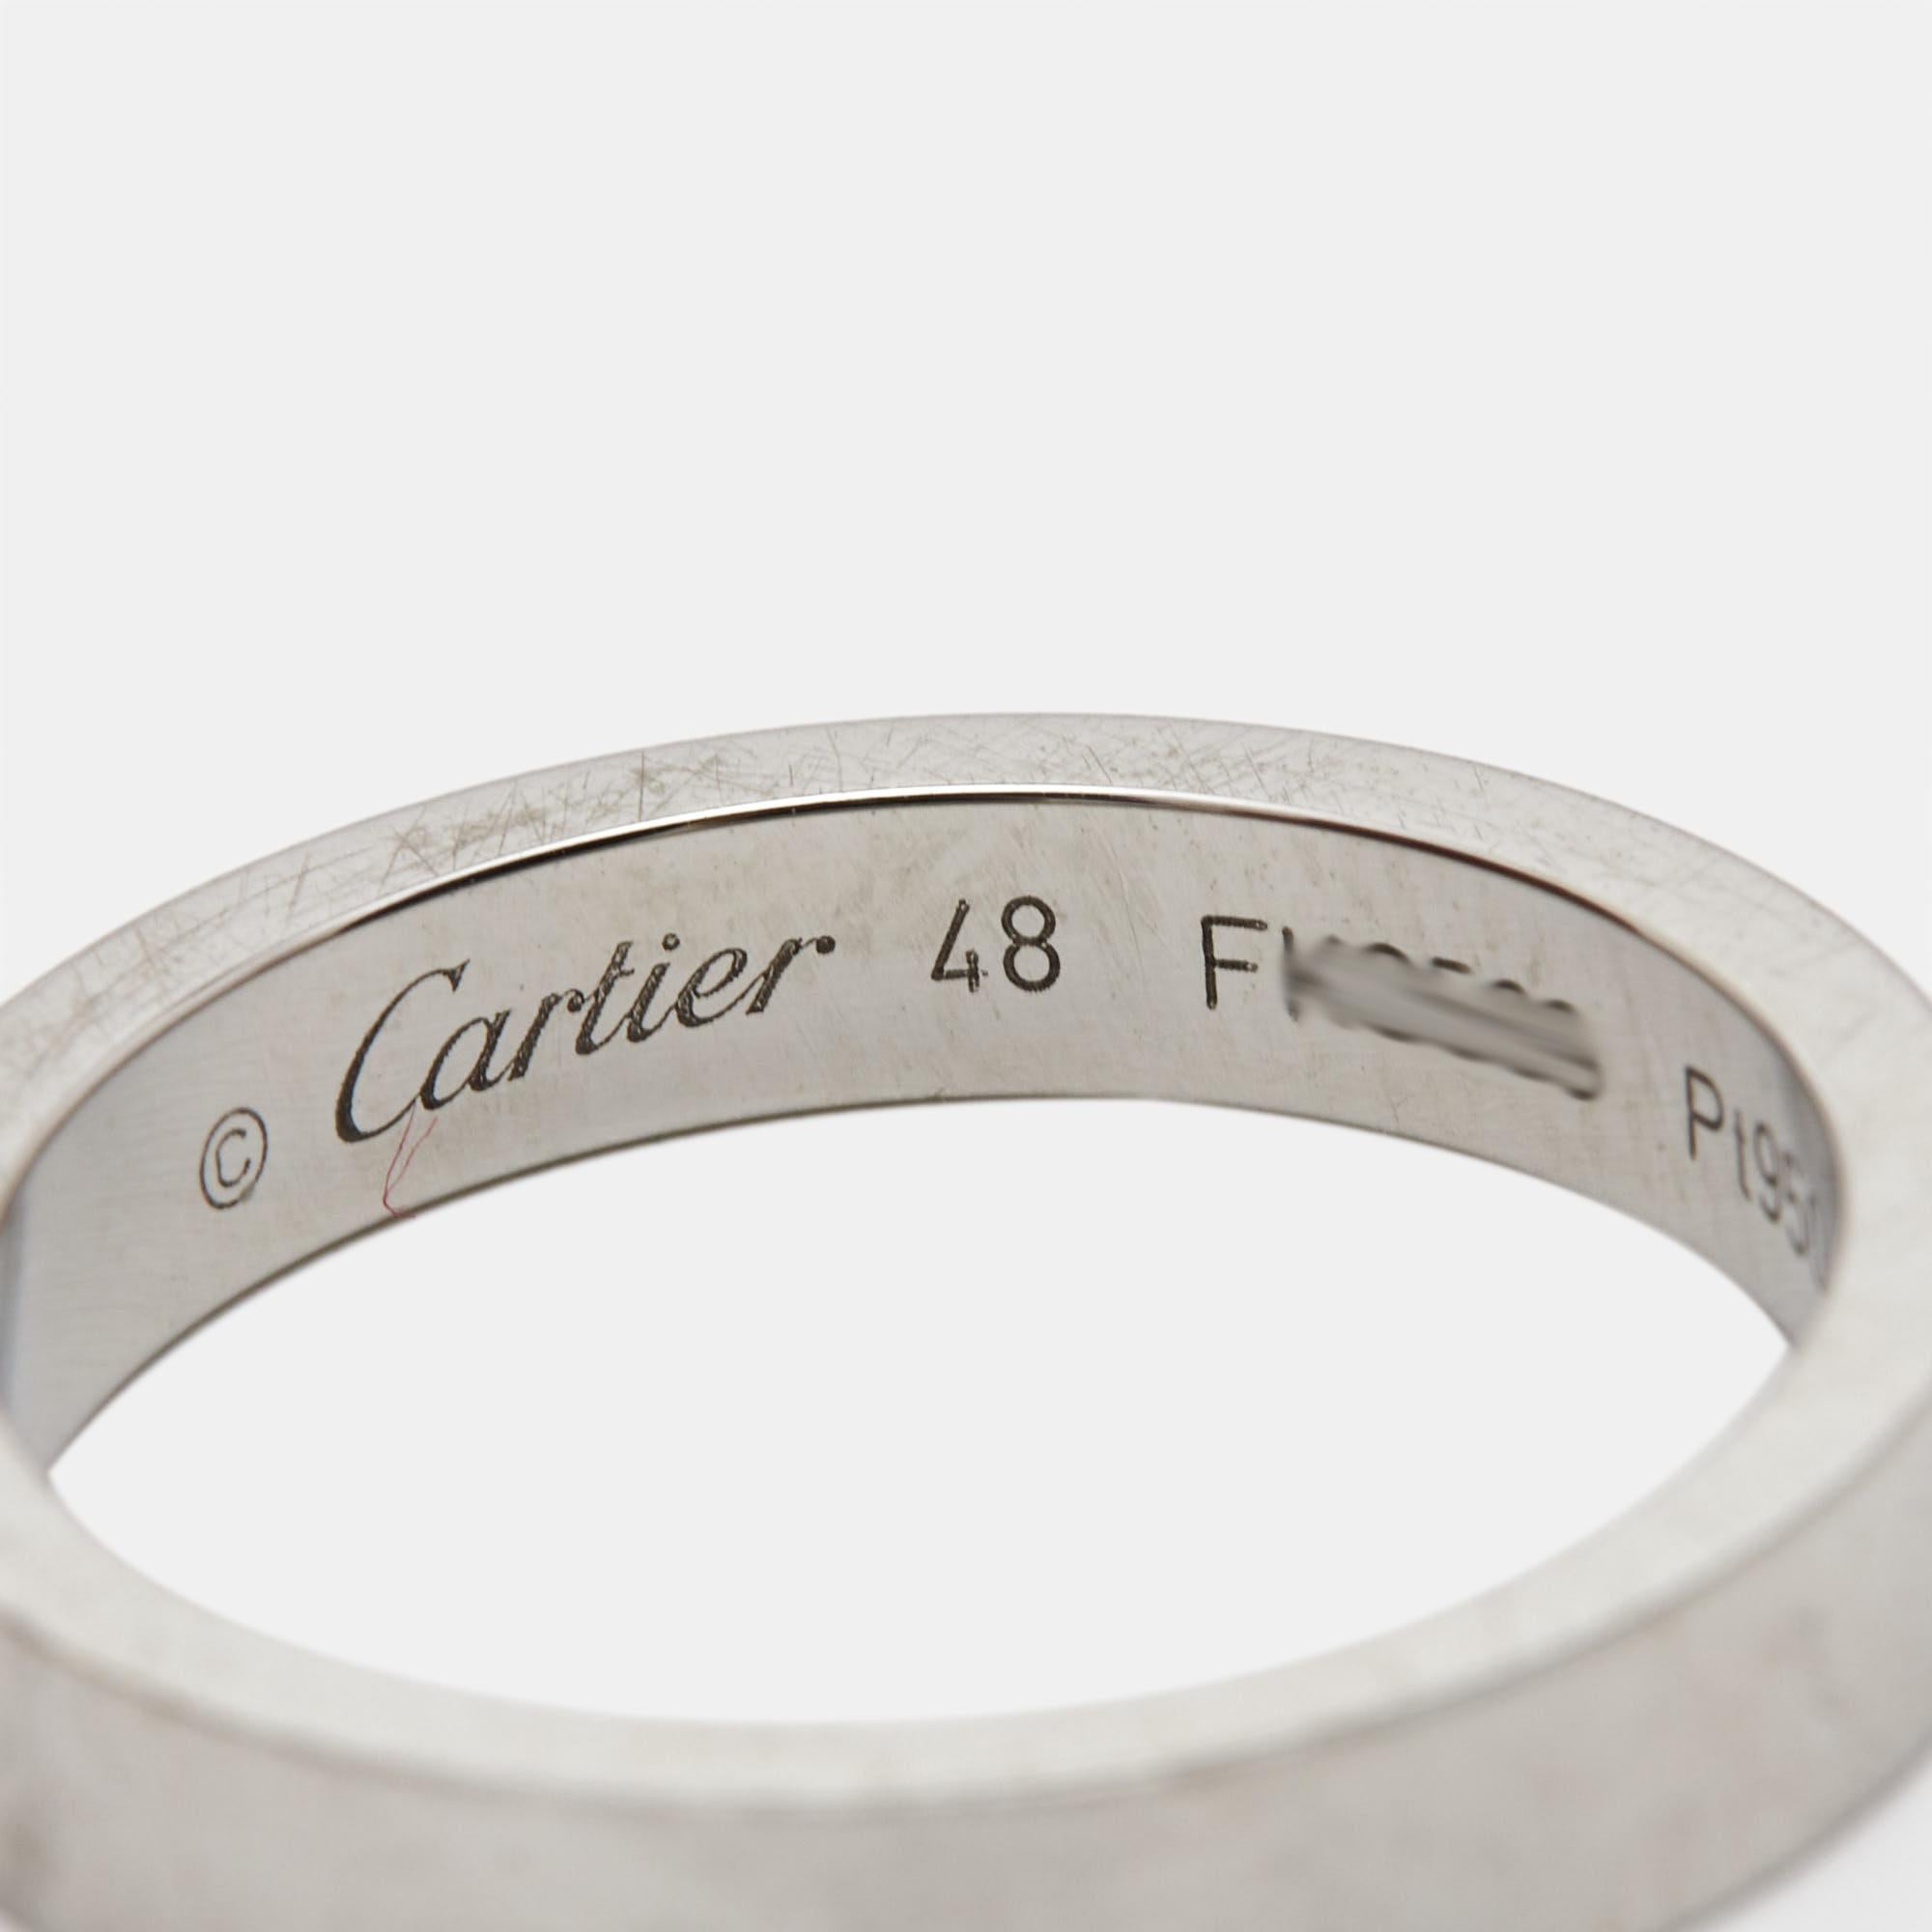 Women's Cartier C De Cartier Platinum Wedding Band Ring Size 48 For Sale